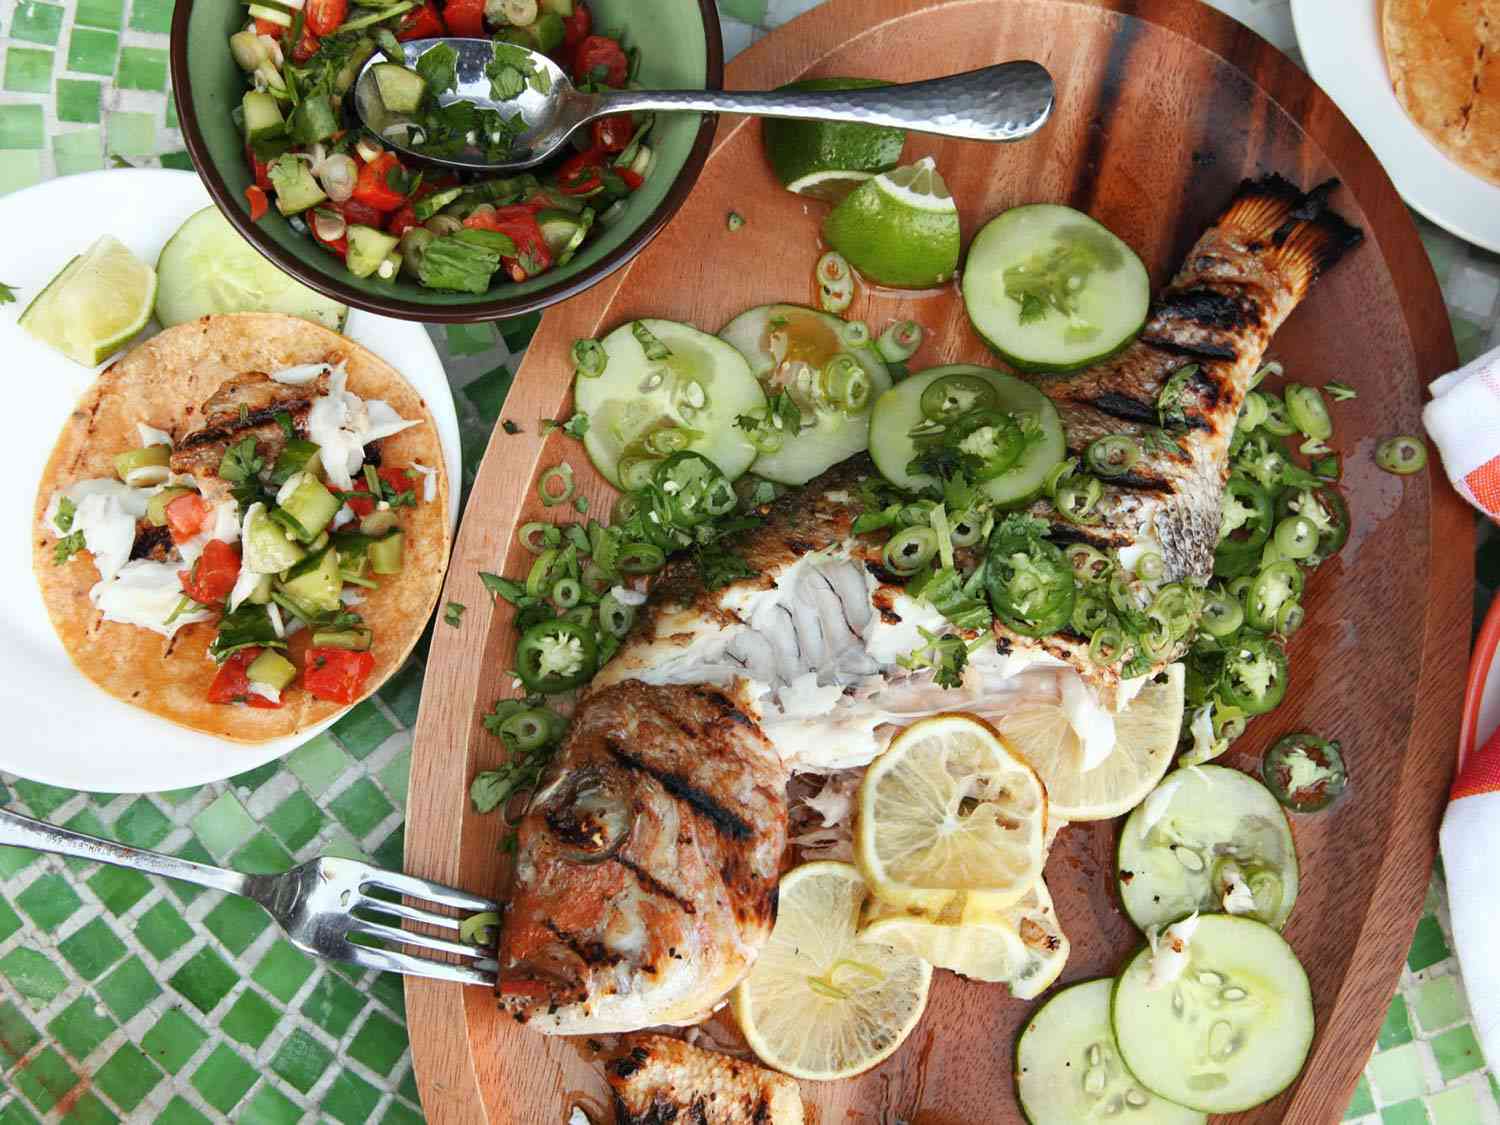 烤整条鱼，配上辣椒、黄瓜片和柠檬片，旁边的盘子里有鱼肉卷和配套的食物